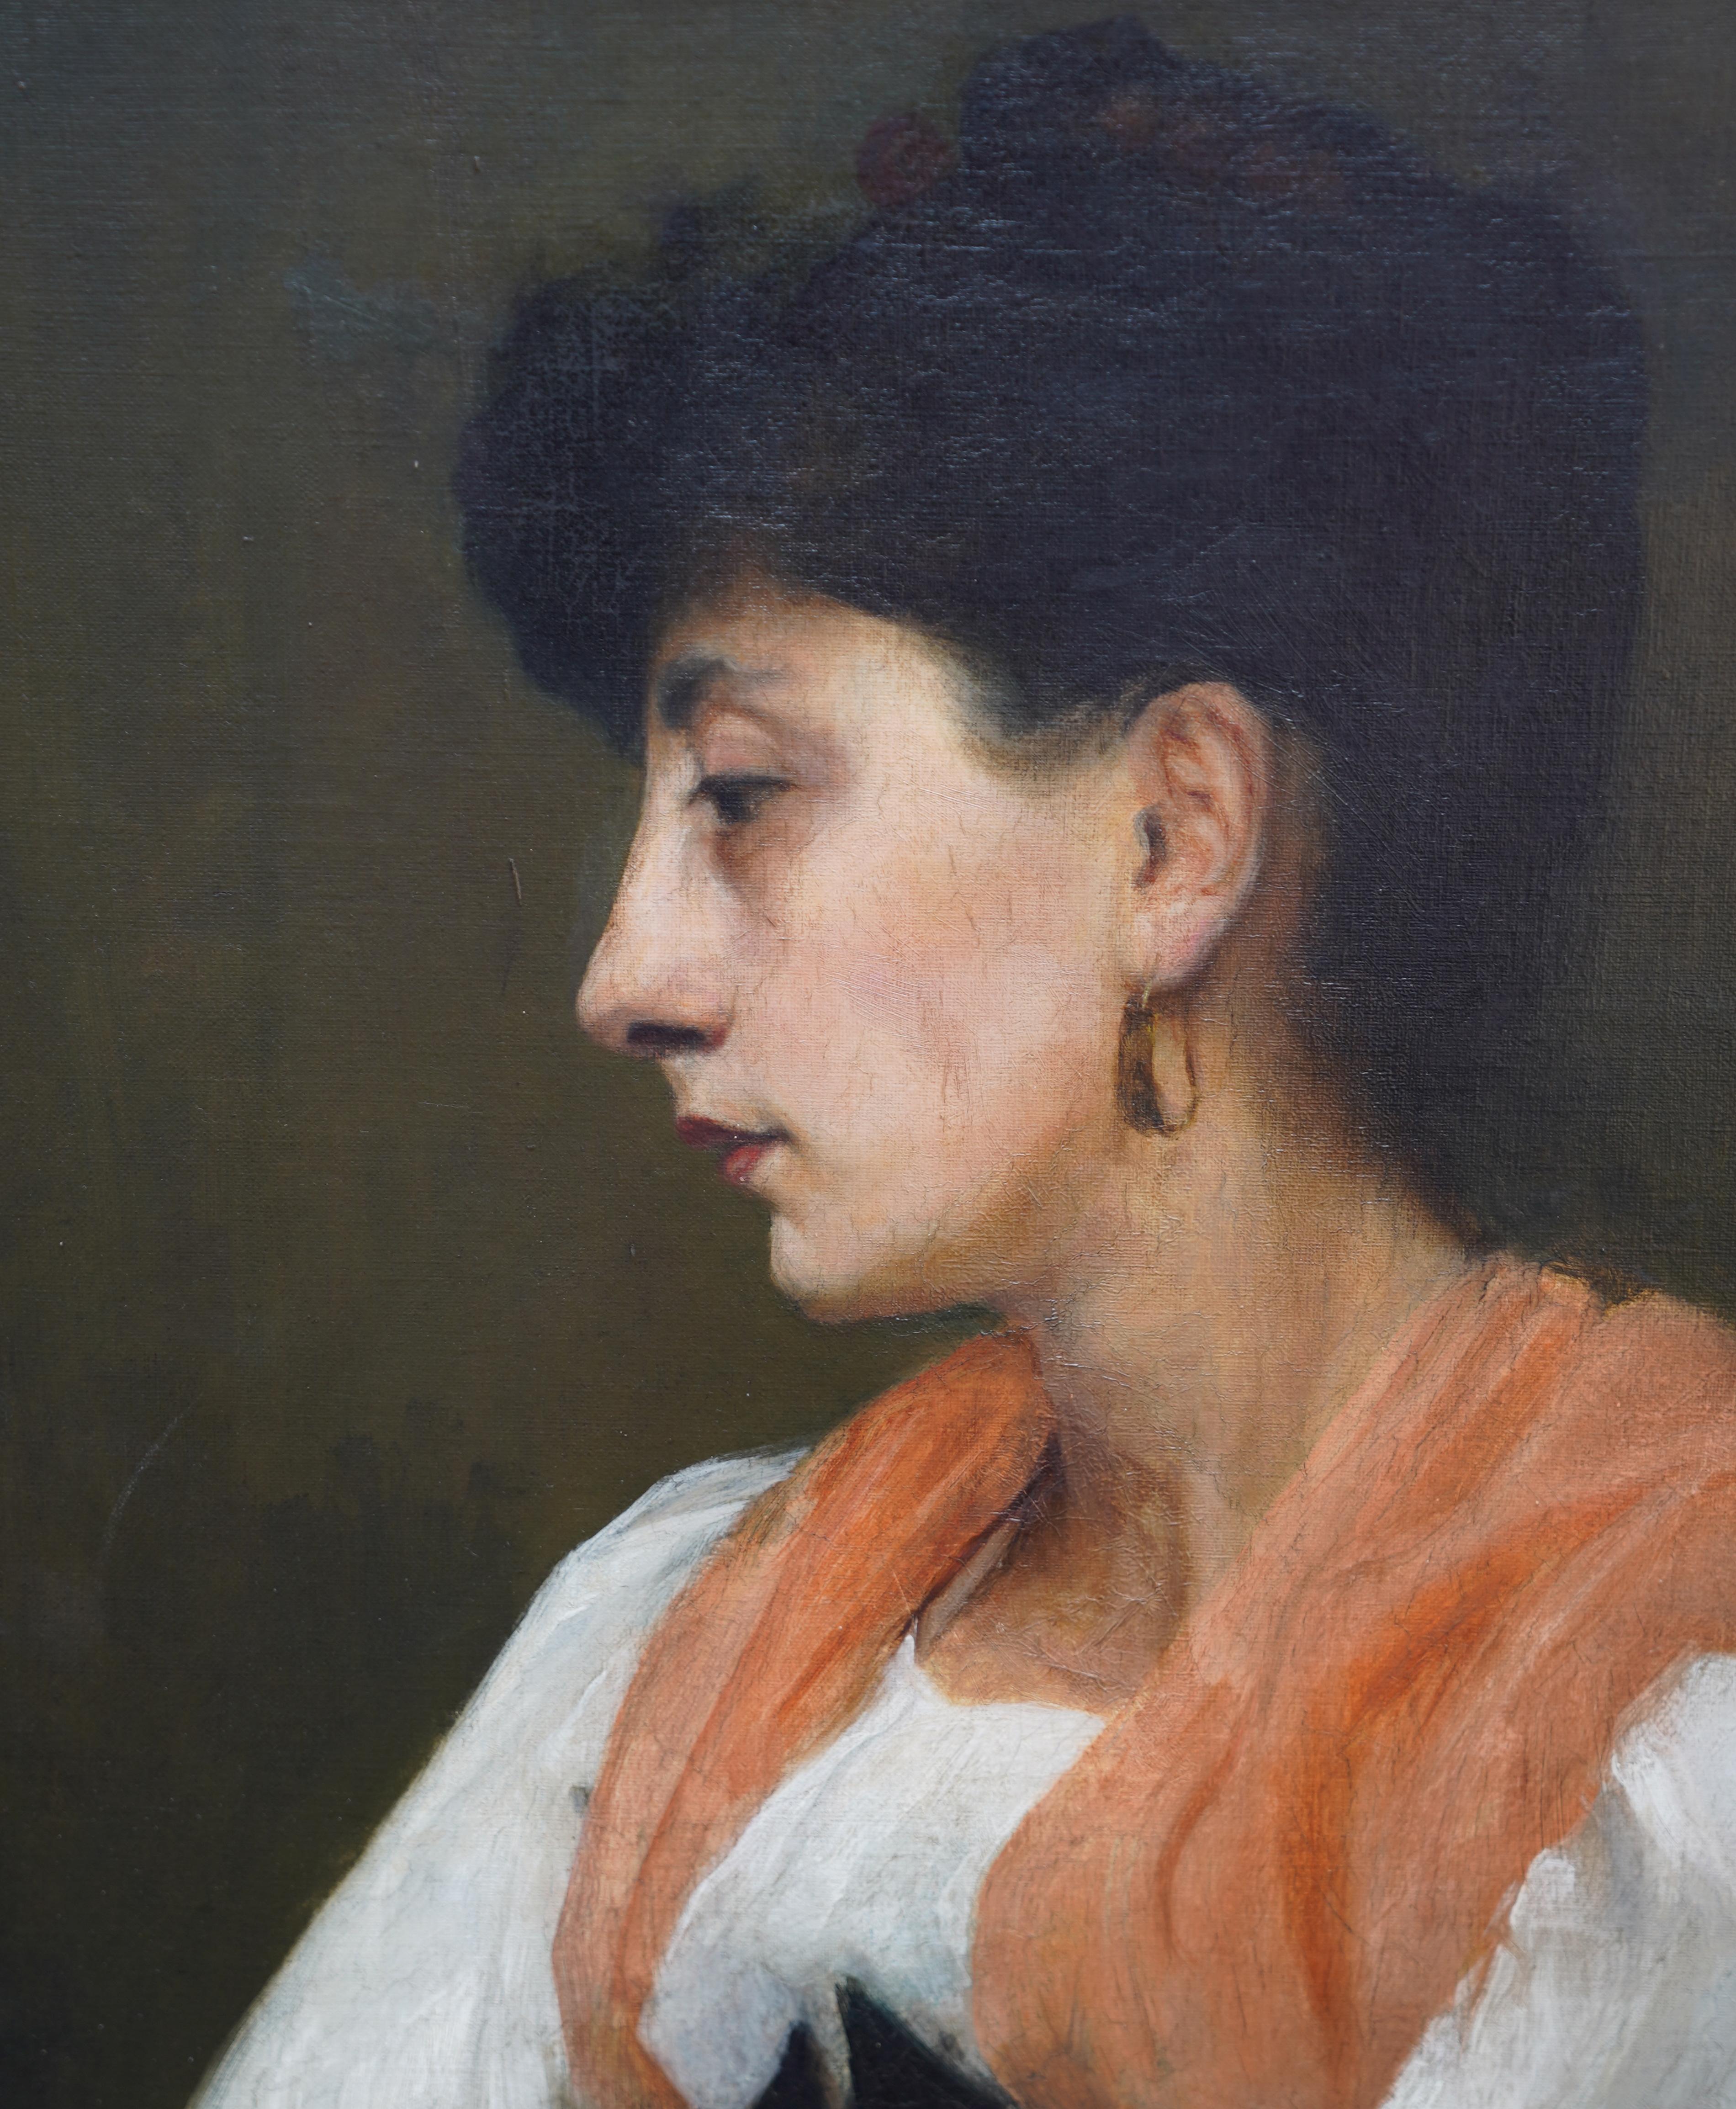 Dieses schöne britische Porträt-Ölgemälde aus der Edwardianischen Zeit wird der Künstlerin Ursula Wood zugeschrieben. Das um 1910 gemalte Bildnis zeigt eine schöne Frau in orangefarbenem Schal und weißer Bluse in halber Länge. Die Pinselführung und